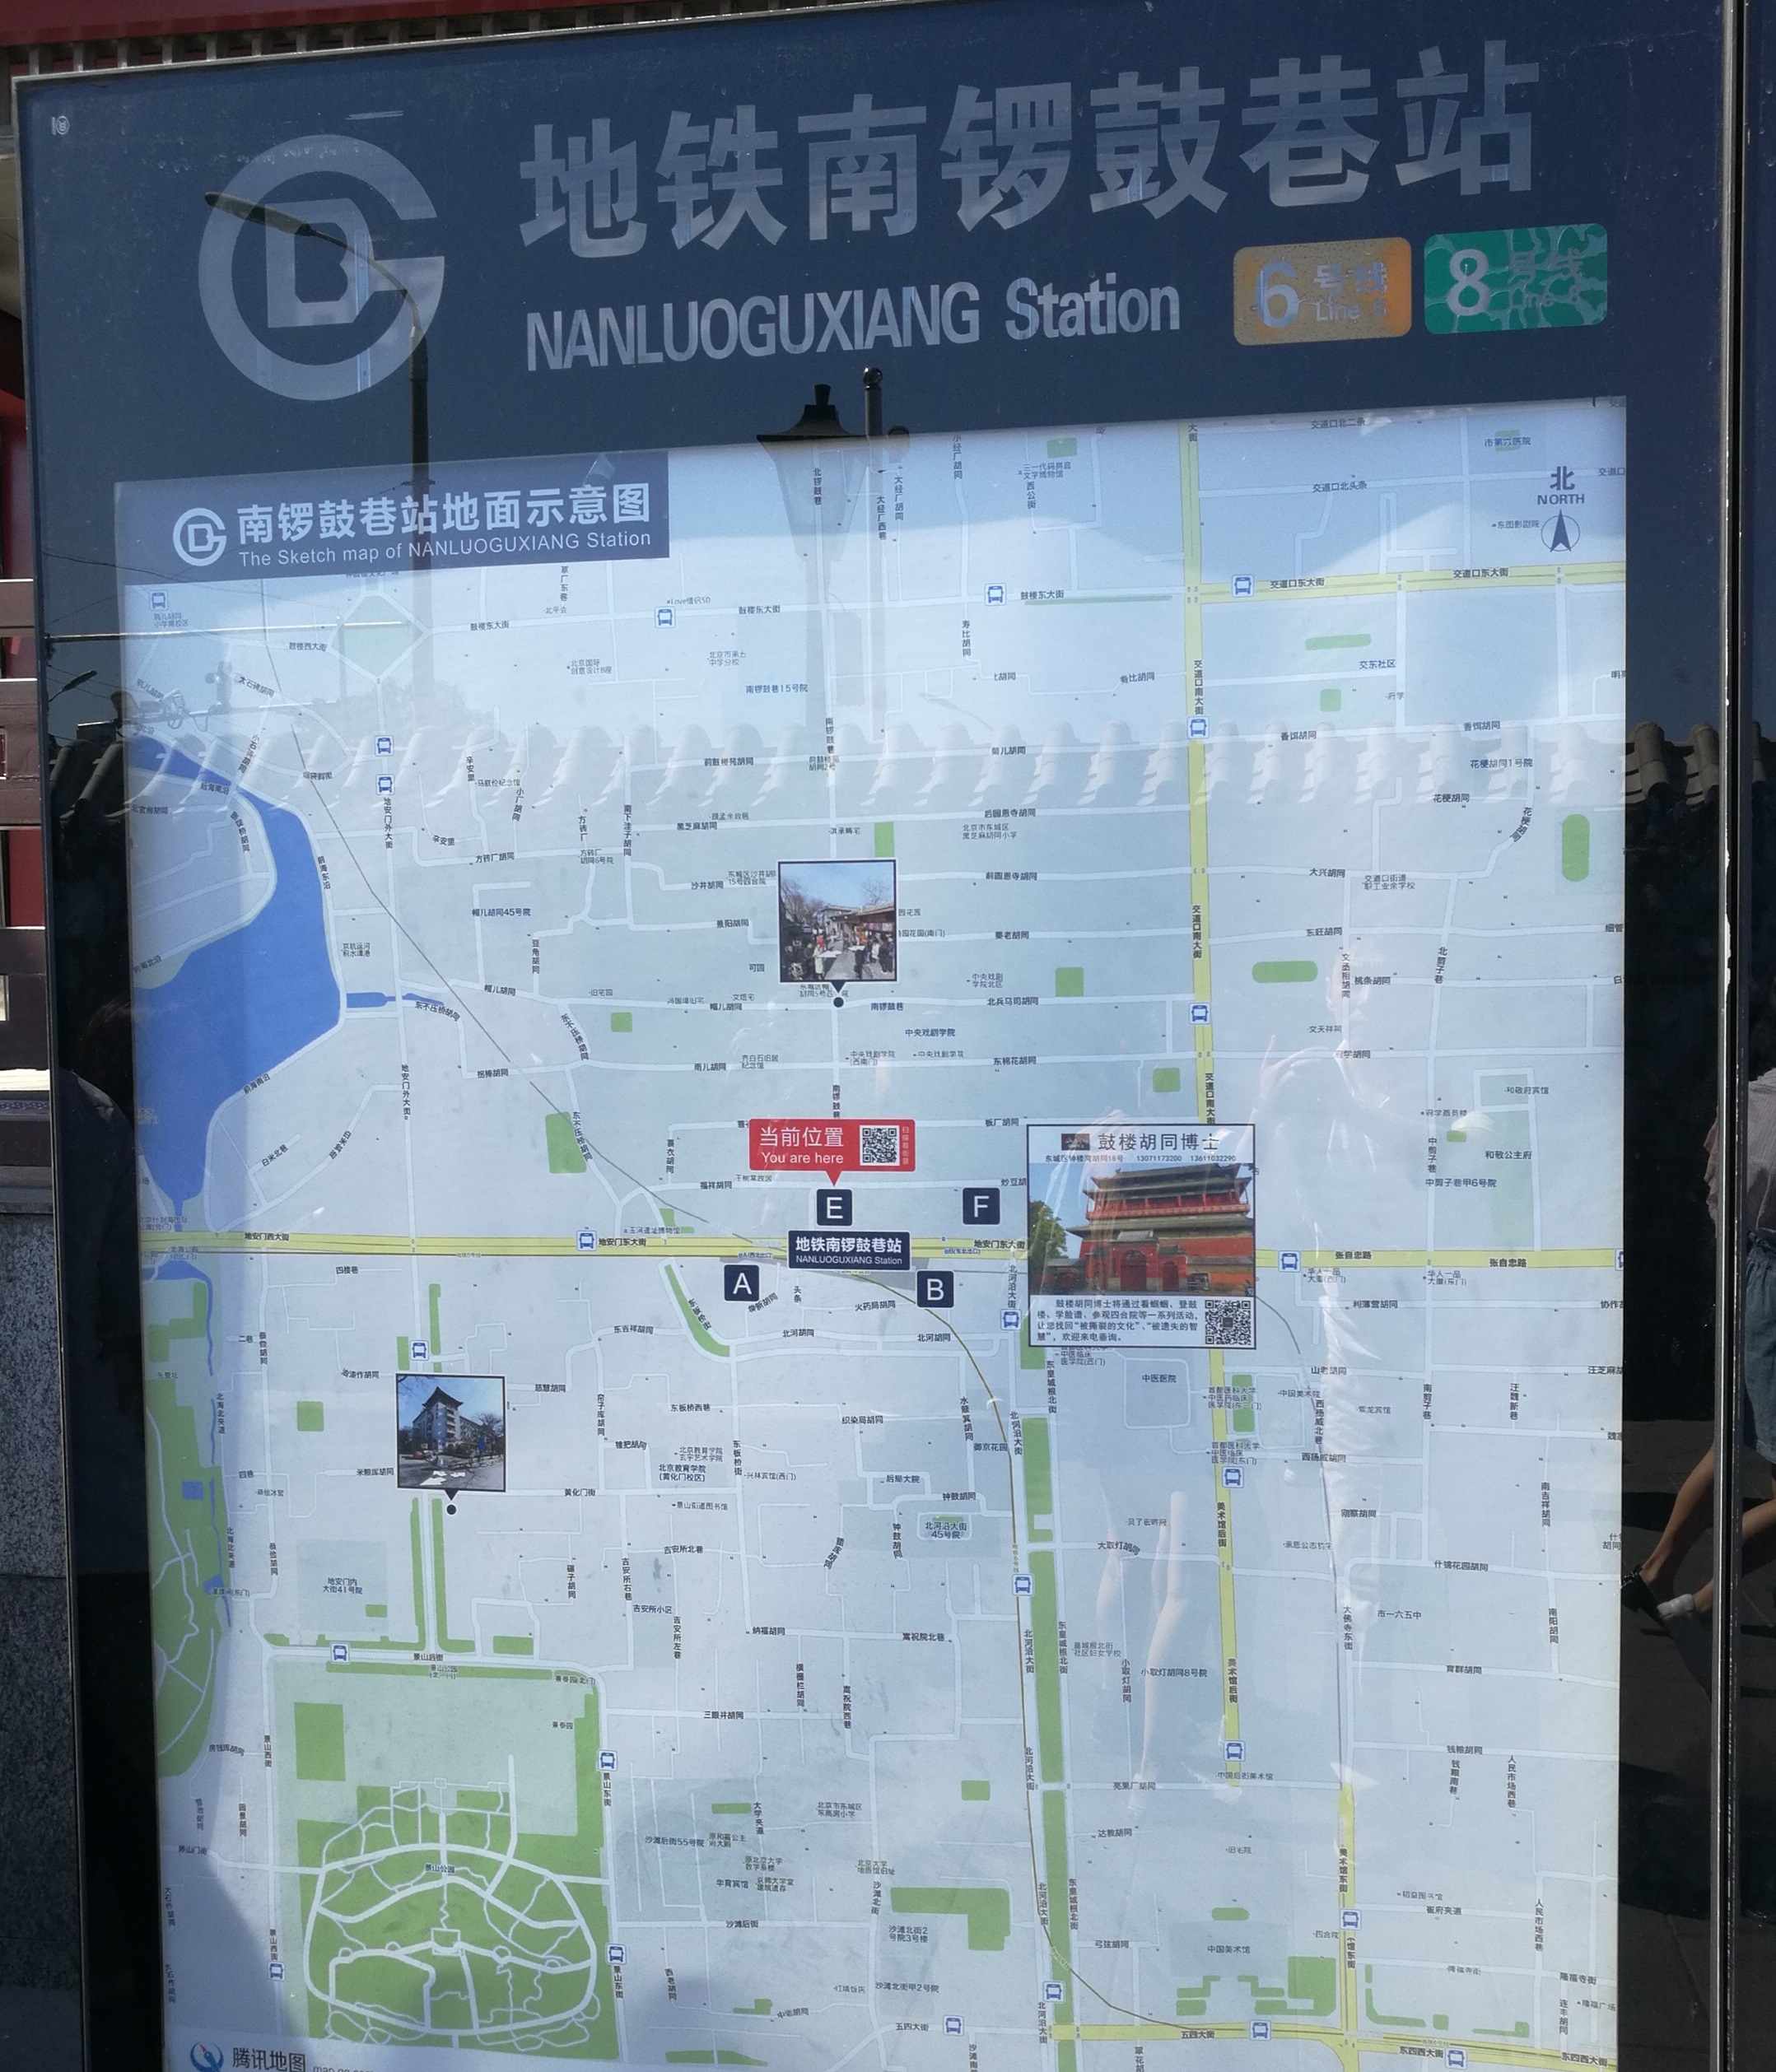 北京地铁8号线南锣鼓巷站织补项目,计划了五年但尚未实施